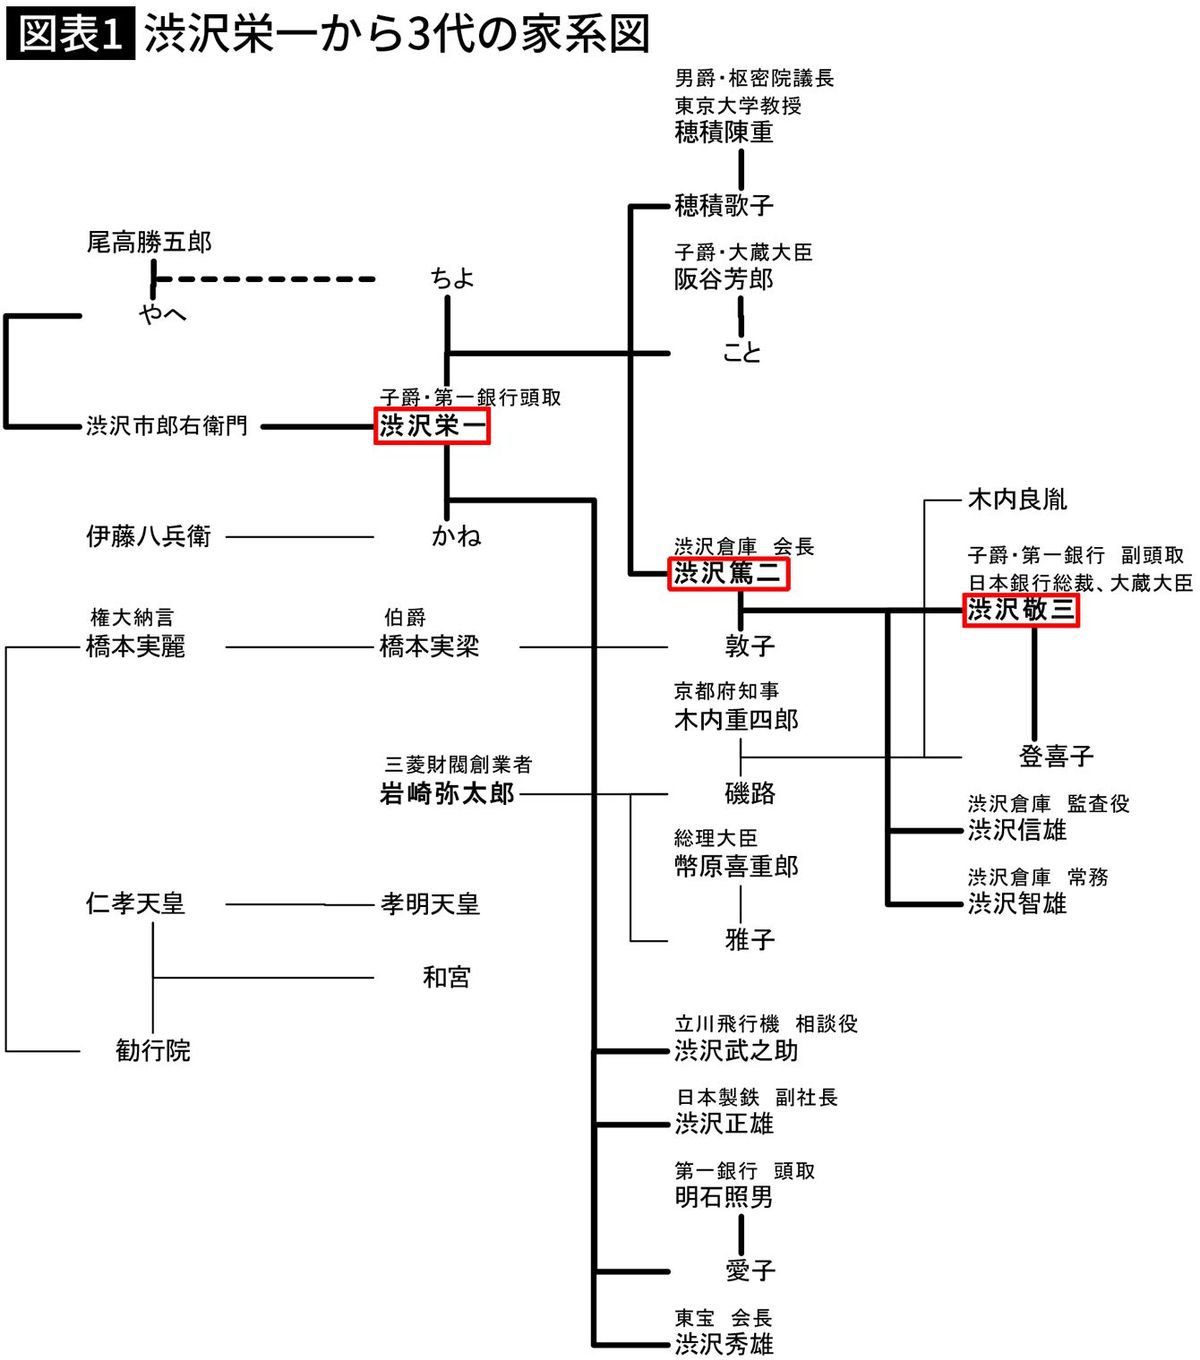 【図表】渋沢栄一から3代の家系図